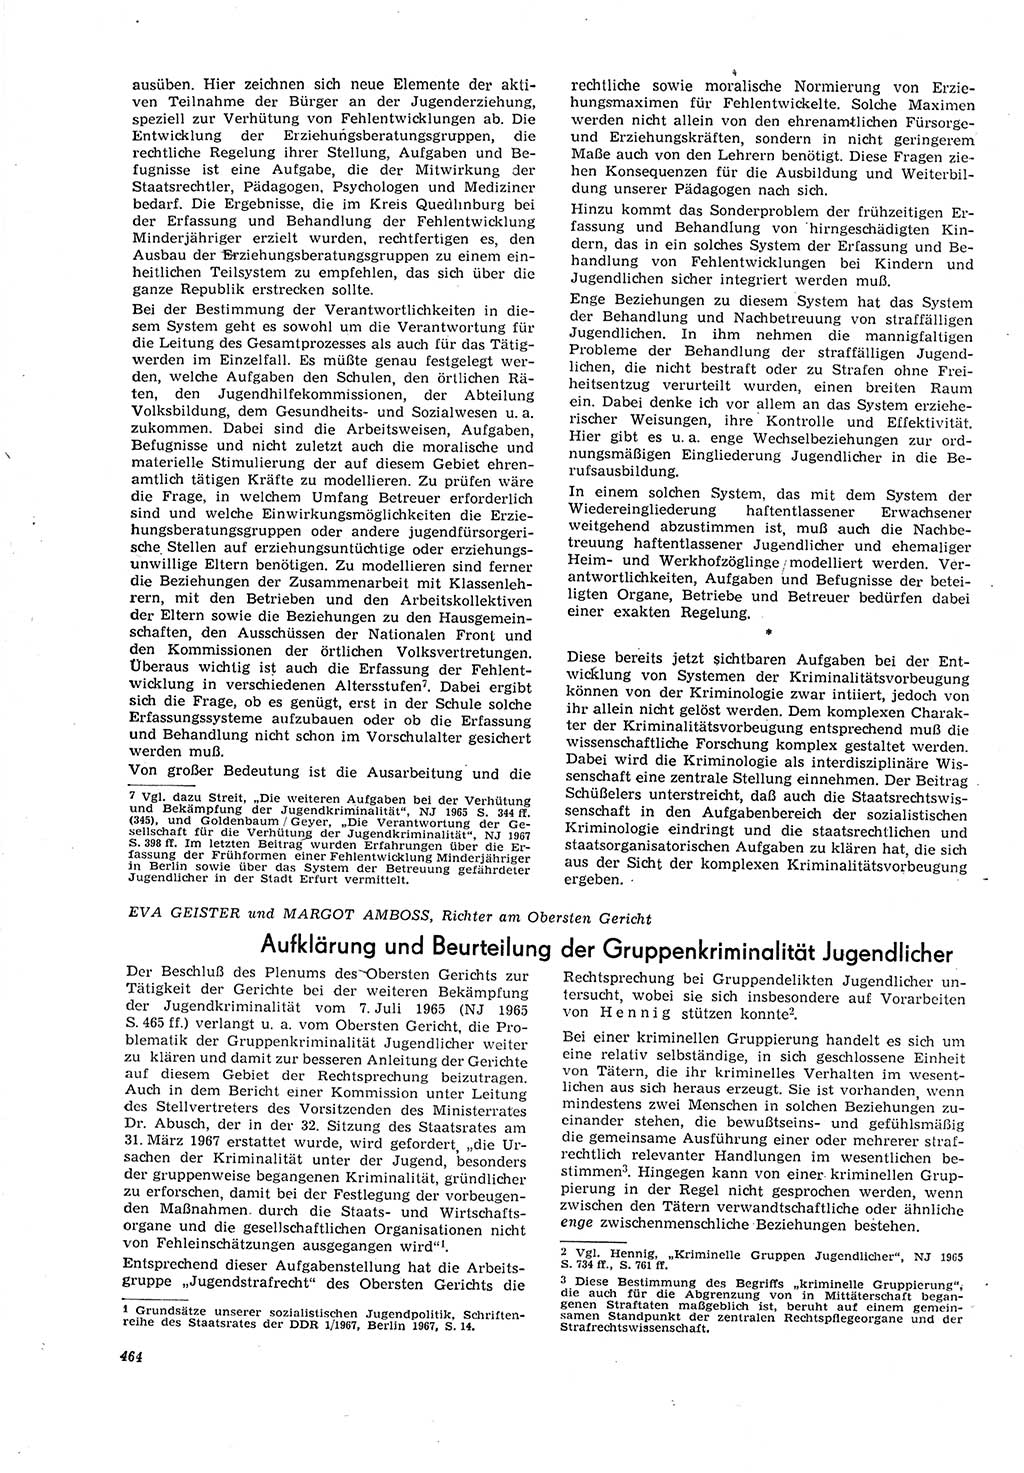 Neue Justiz (NJ), Zeitschrift für Recht und Rechtswissenschaft [Deutsche Demokratische Republik (DDR)], 21. Jahrgang 1967, Seite 464 (NJ DDR 1967, S. 464)